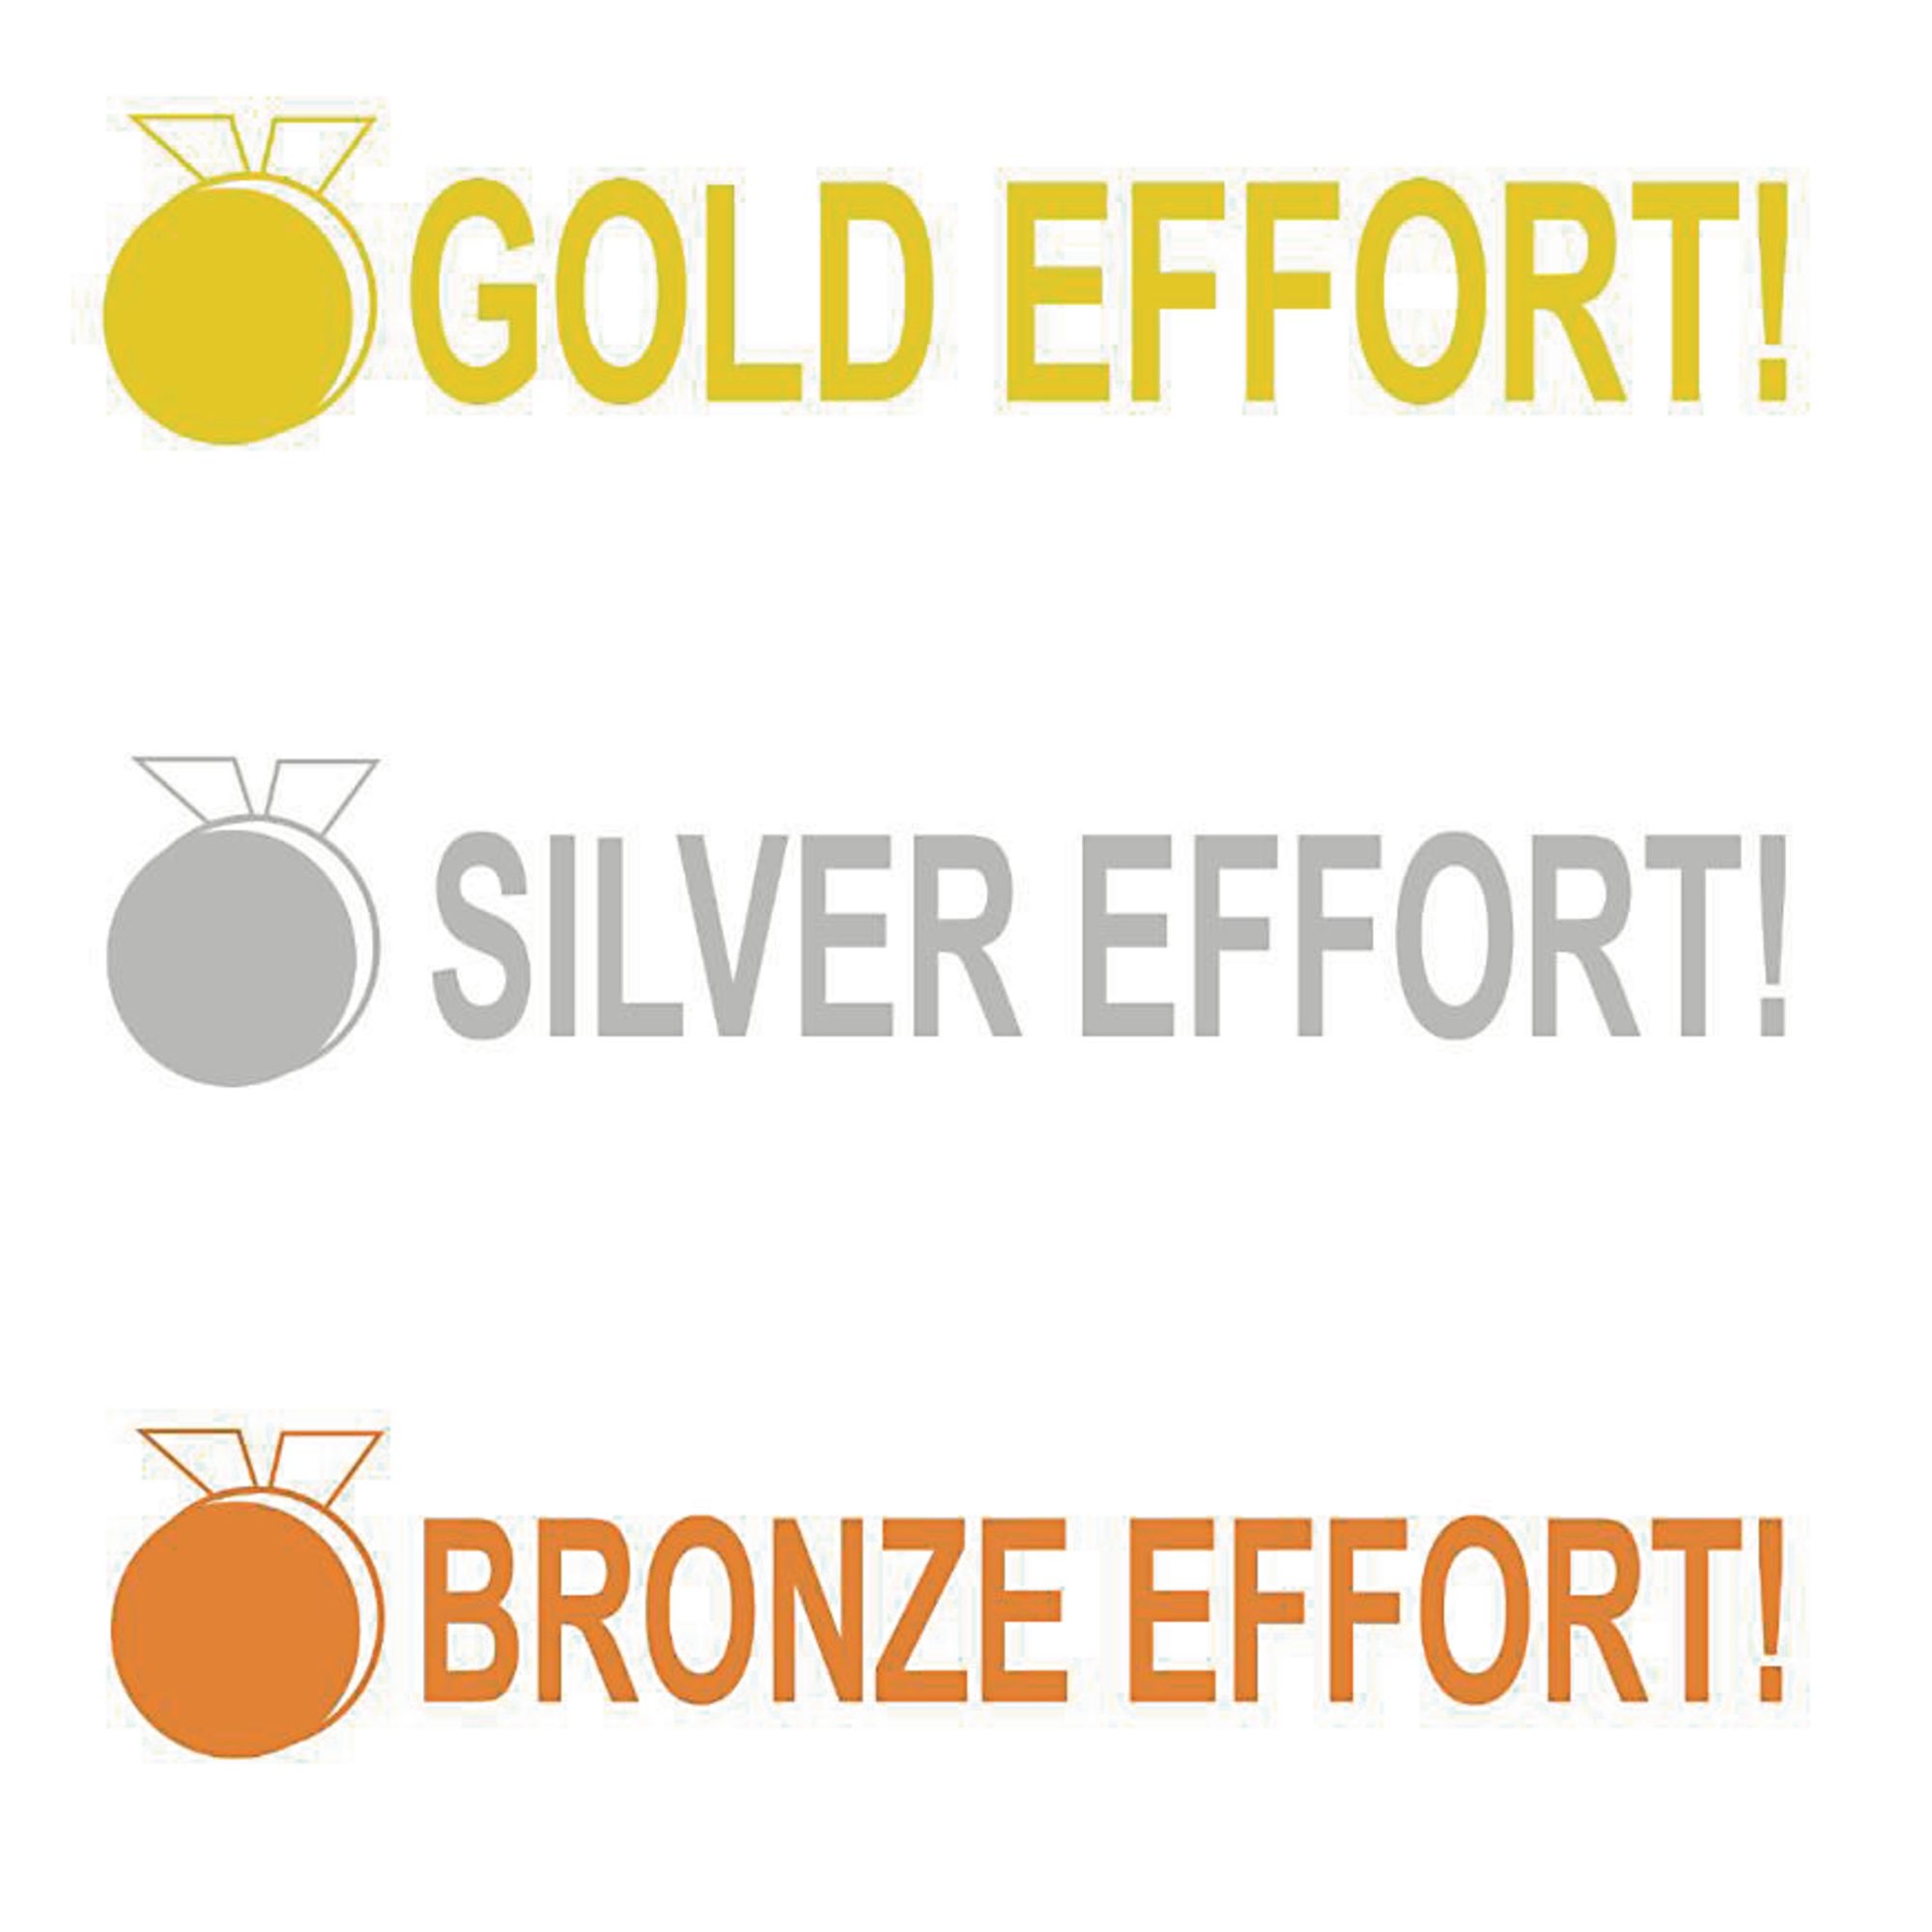 Xstamper 3 in 1 Stamper - Bronze, Silver and Gold Effort